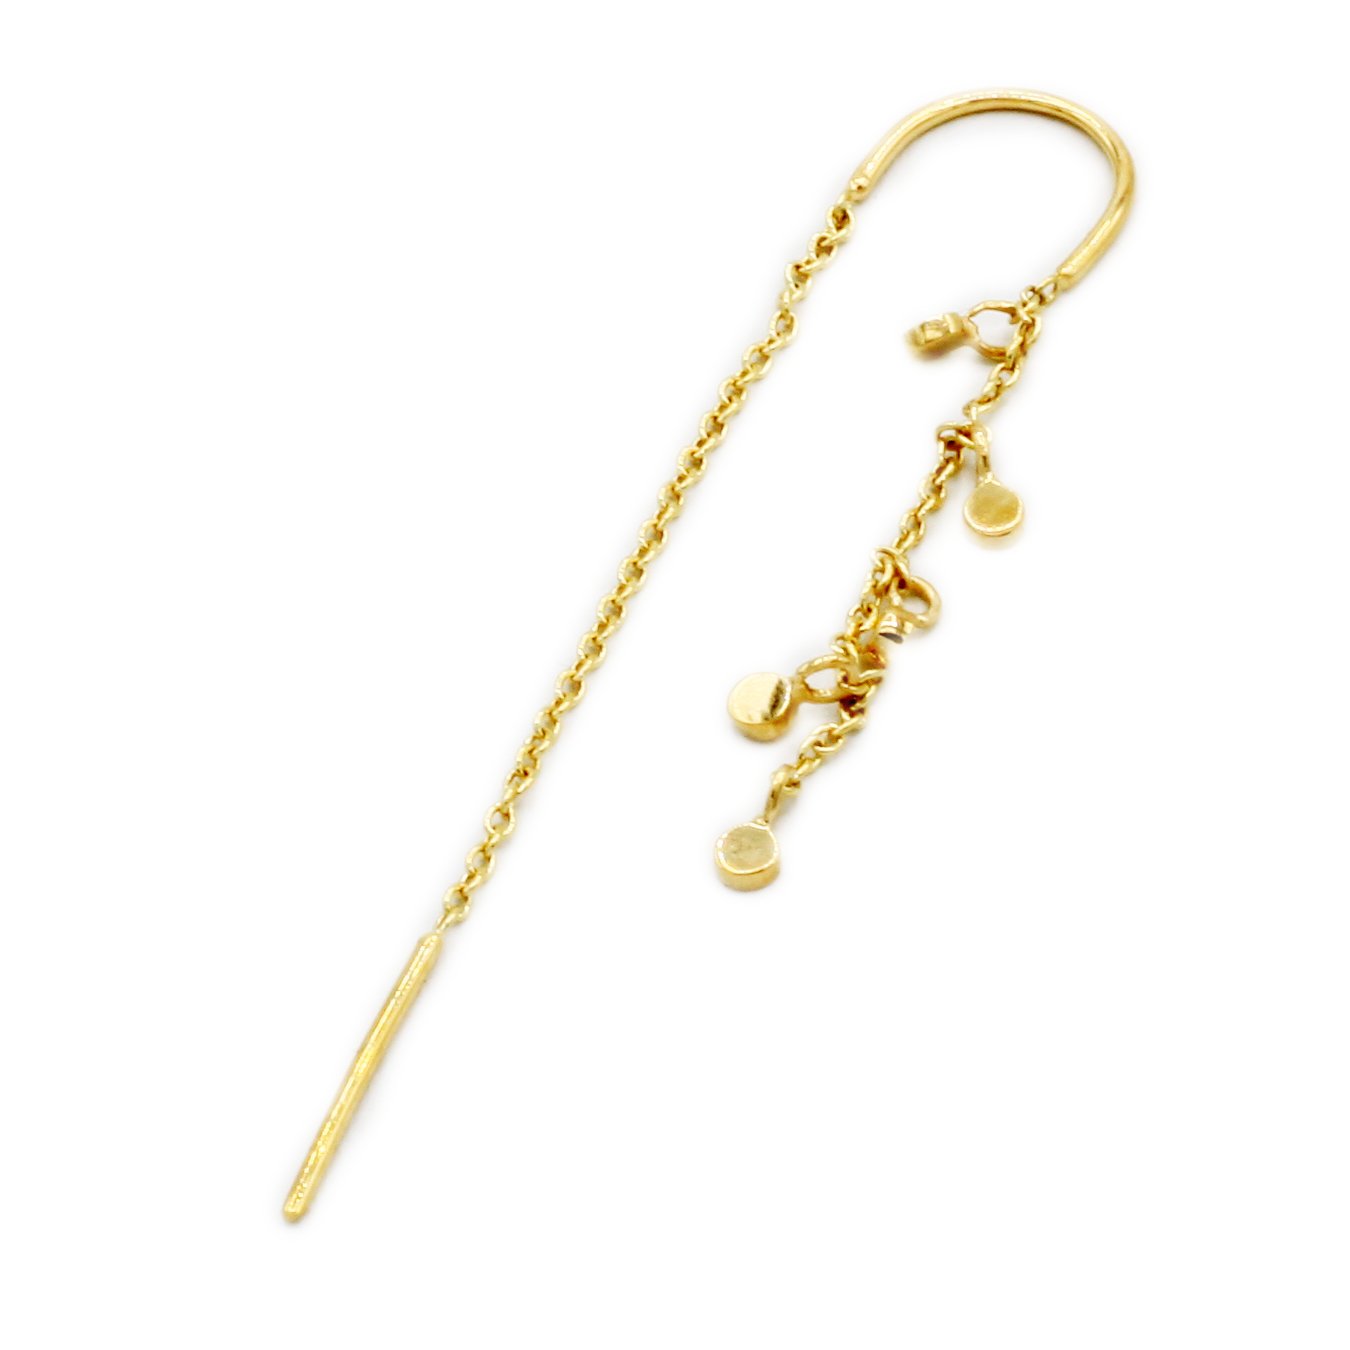 Scosha | Fairy Bead Threader + 10k Gold Drop Earring | Firecracker